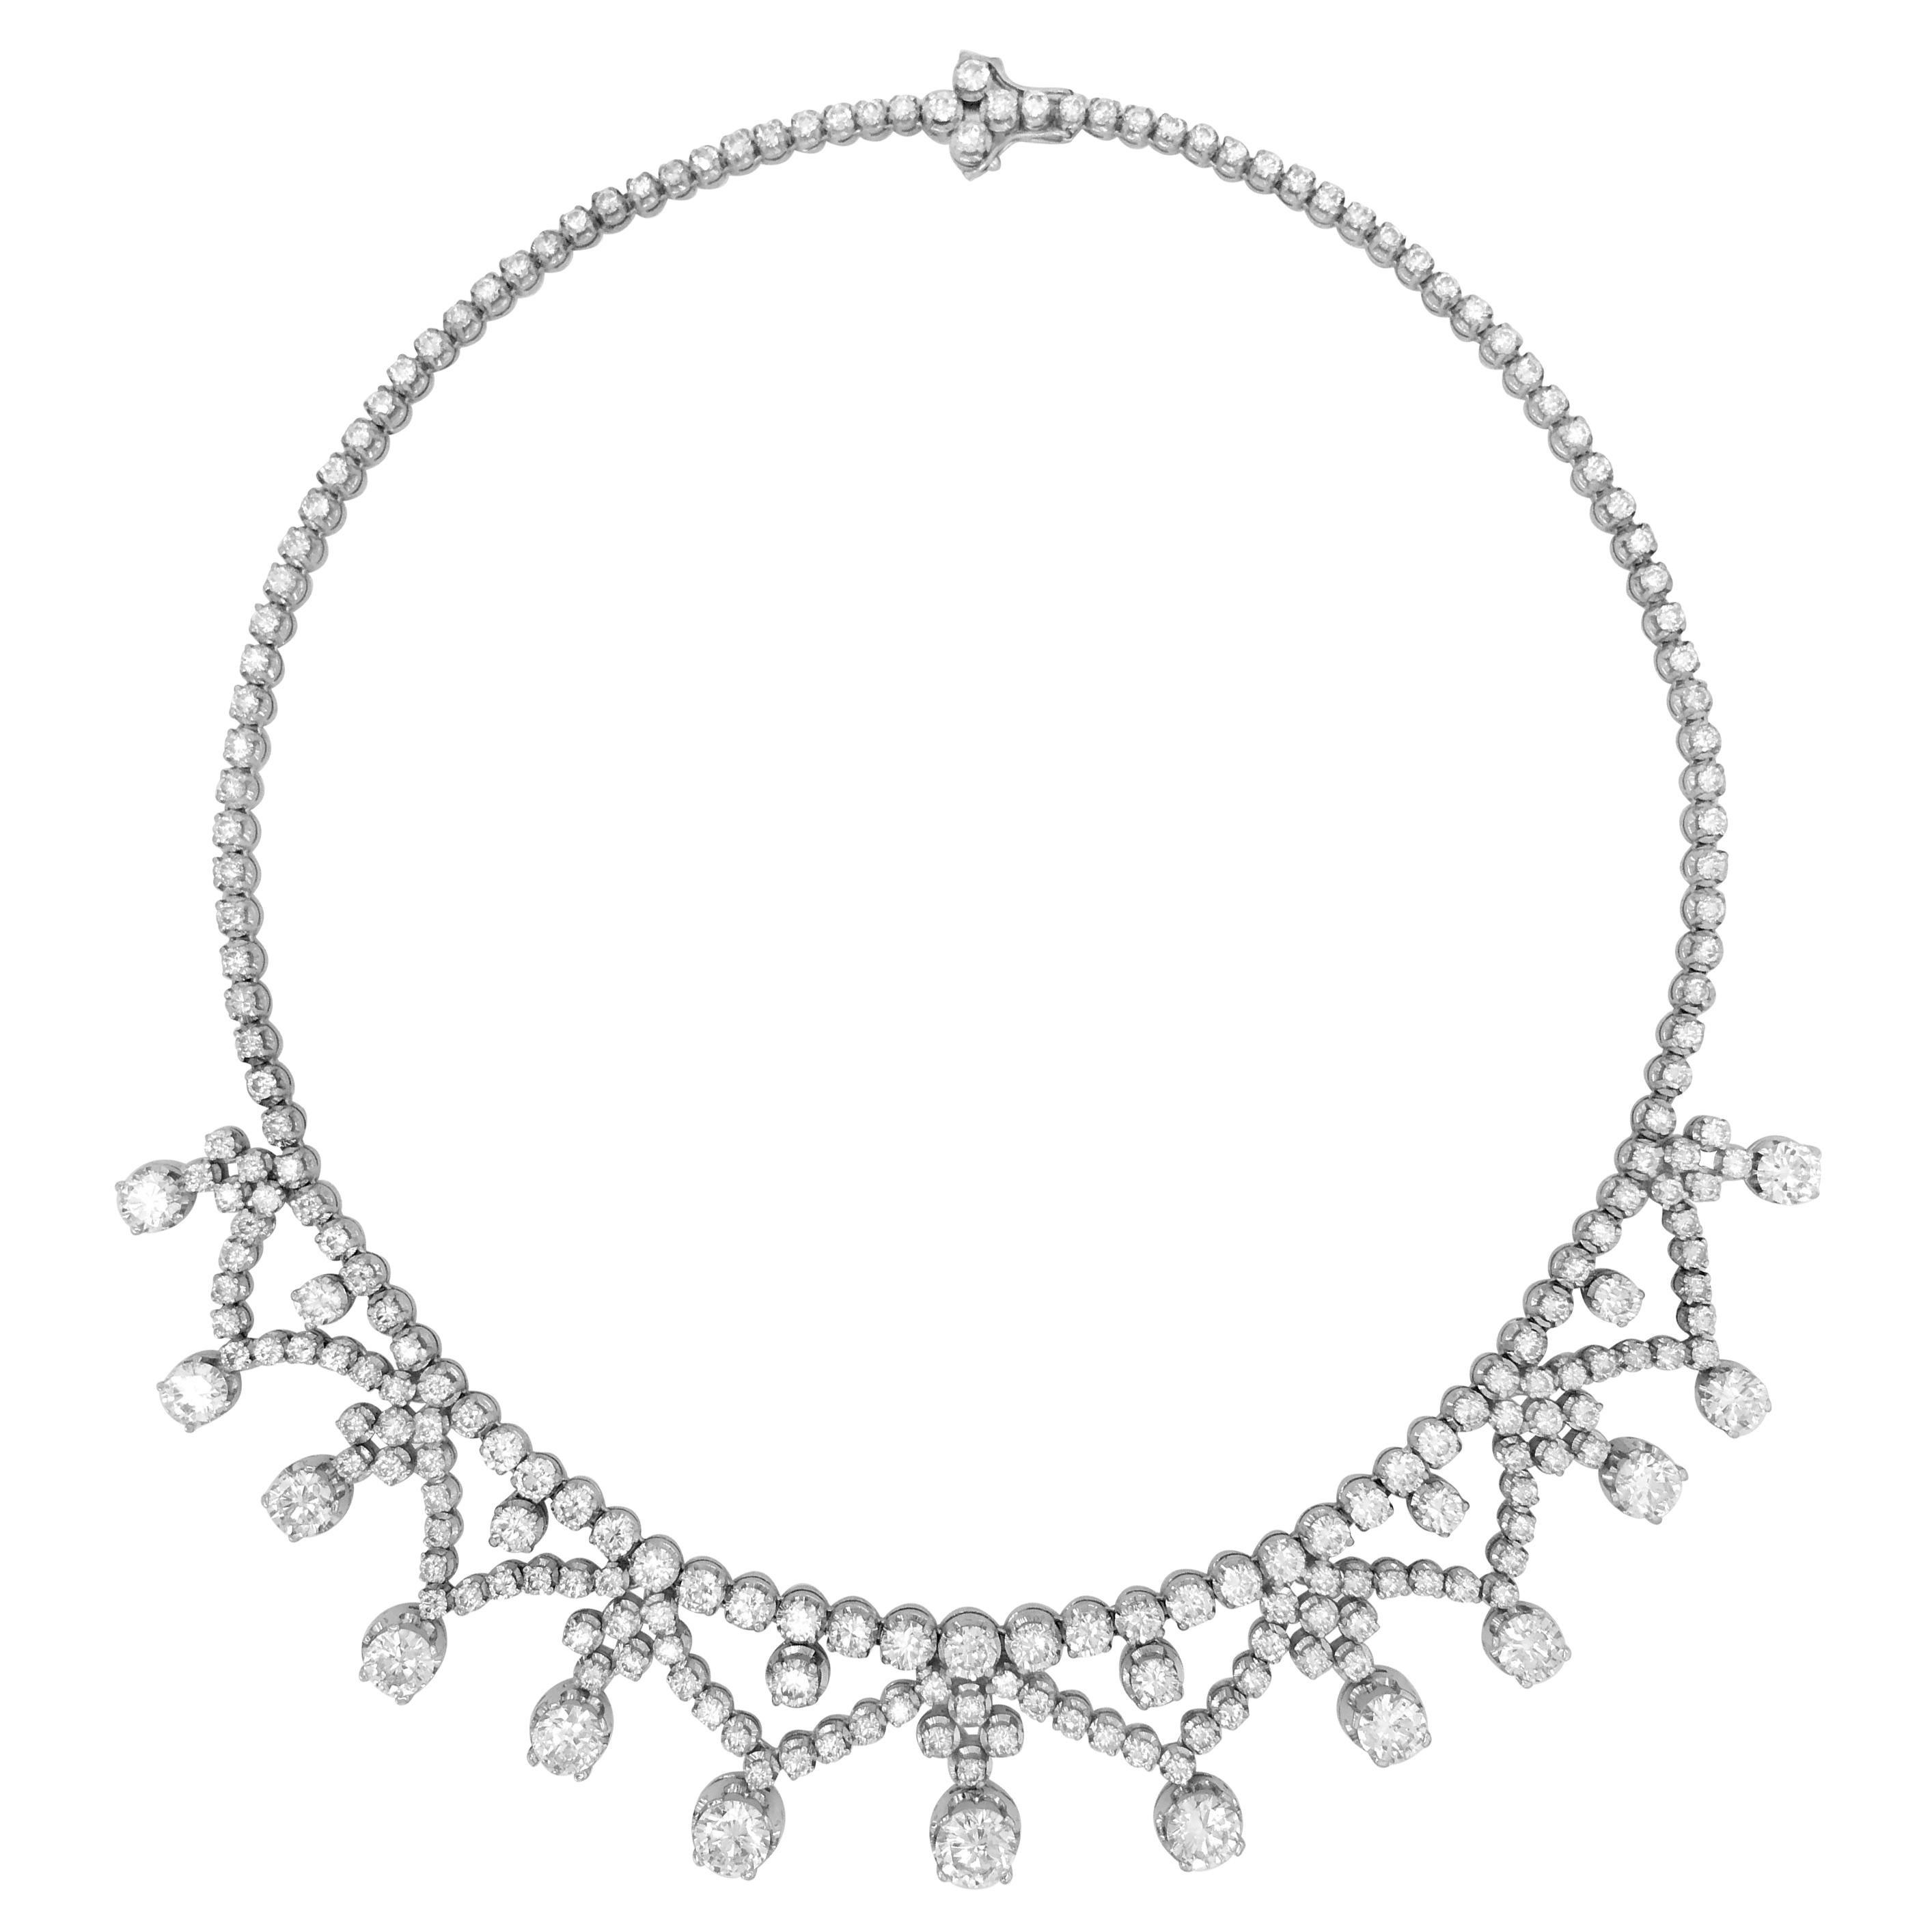 39.0 Carat Diamond Necklace